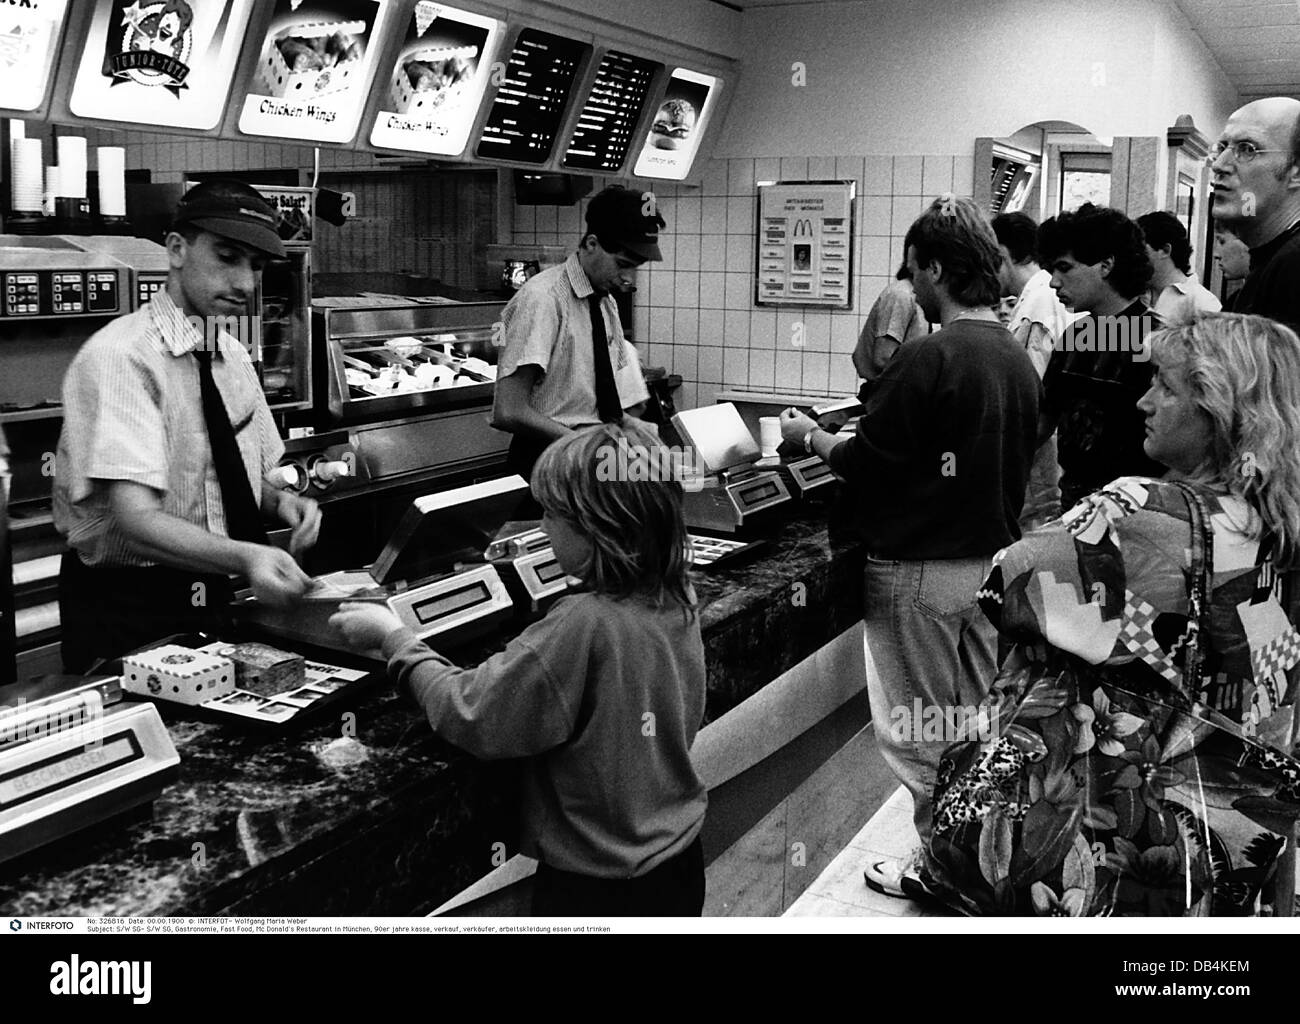 Gastronomie, Fast Food, McDonald's Restaurant, München, Deutschland, 1990er Jahre, , zusätzliche-Rights-Clearences-nicht verfügbar Stockfoto